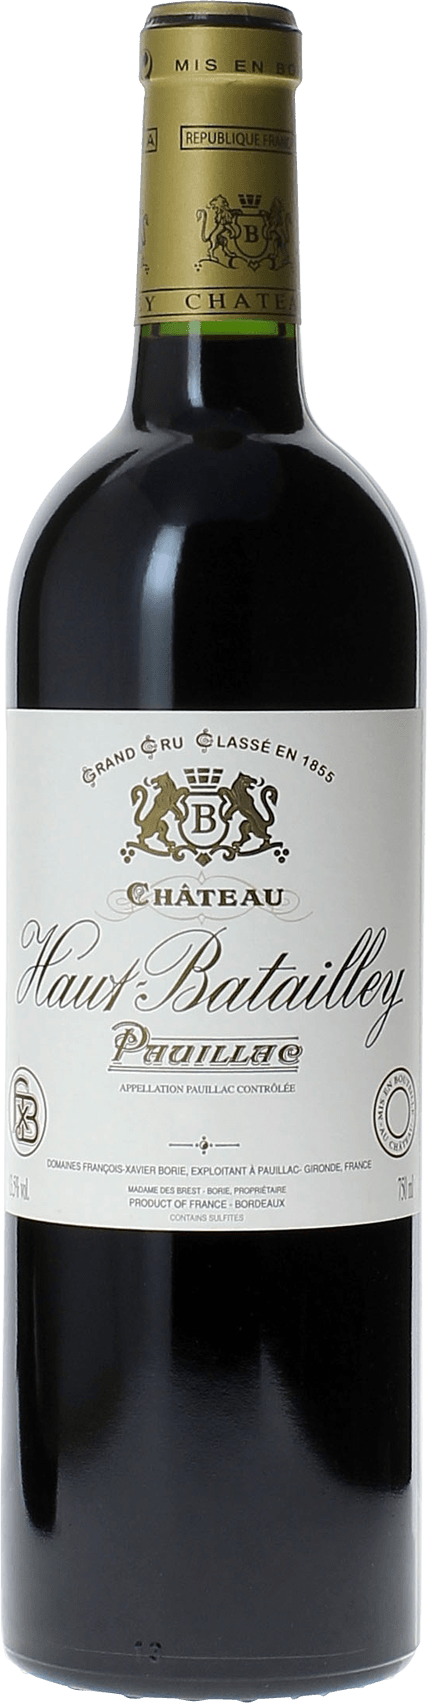 Haut batailley 1993 5 me Grand cru class Pauillac, Bordeaux rouge